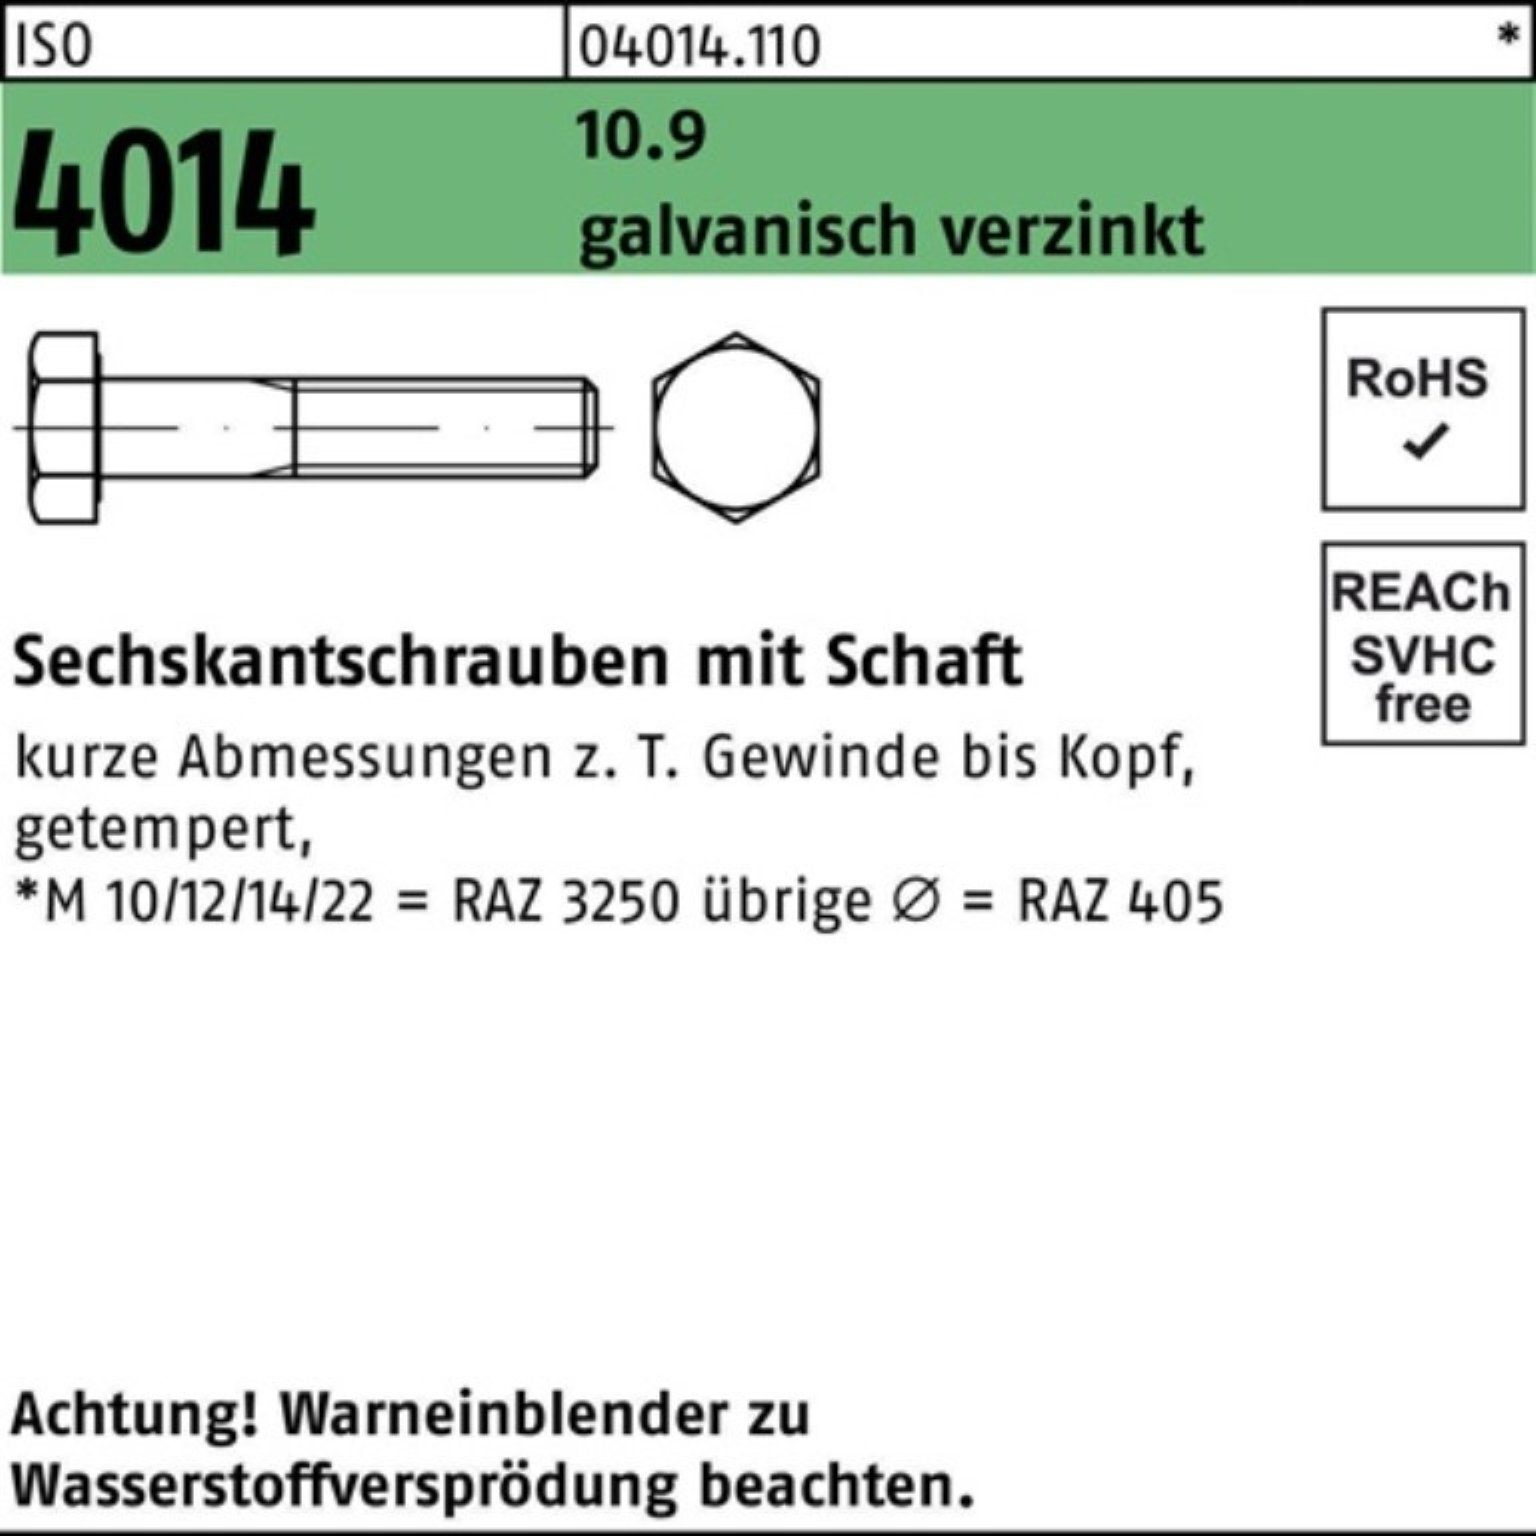 Bufab Sechskantschraube 100er Pack M30x 10.9 4014 ISO galv.verz. 190 Schaft Sechskantschraube